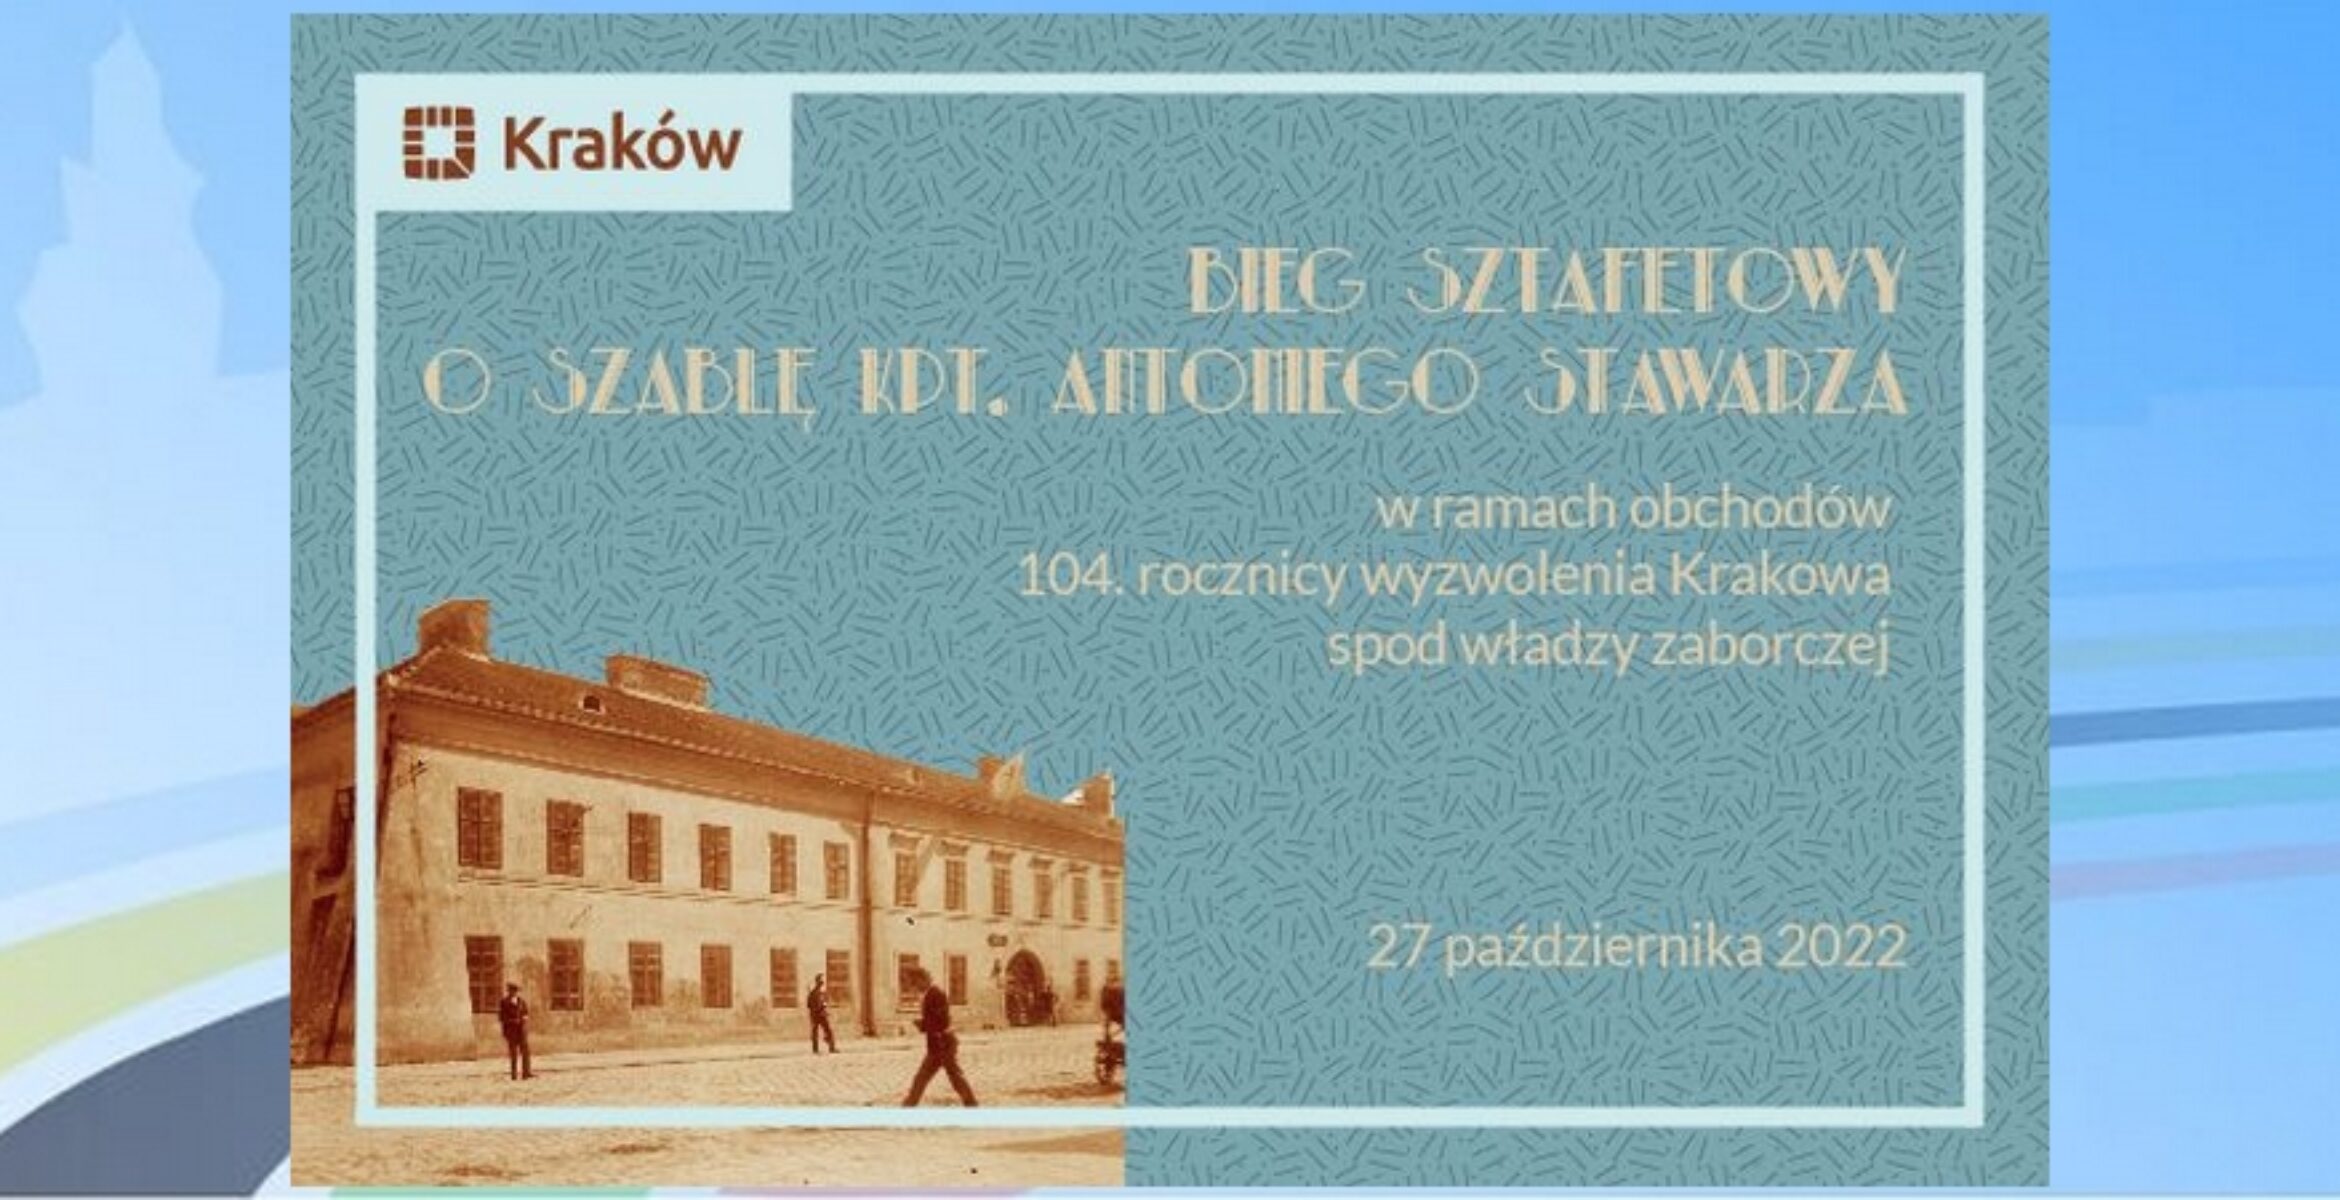 Bieg o Szablę Kapitana Antoniego Stawarza w 104 rocznicę wyzwolenia Krakowa